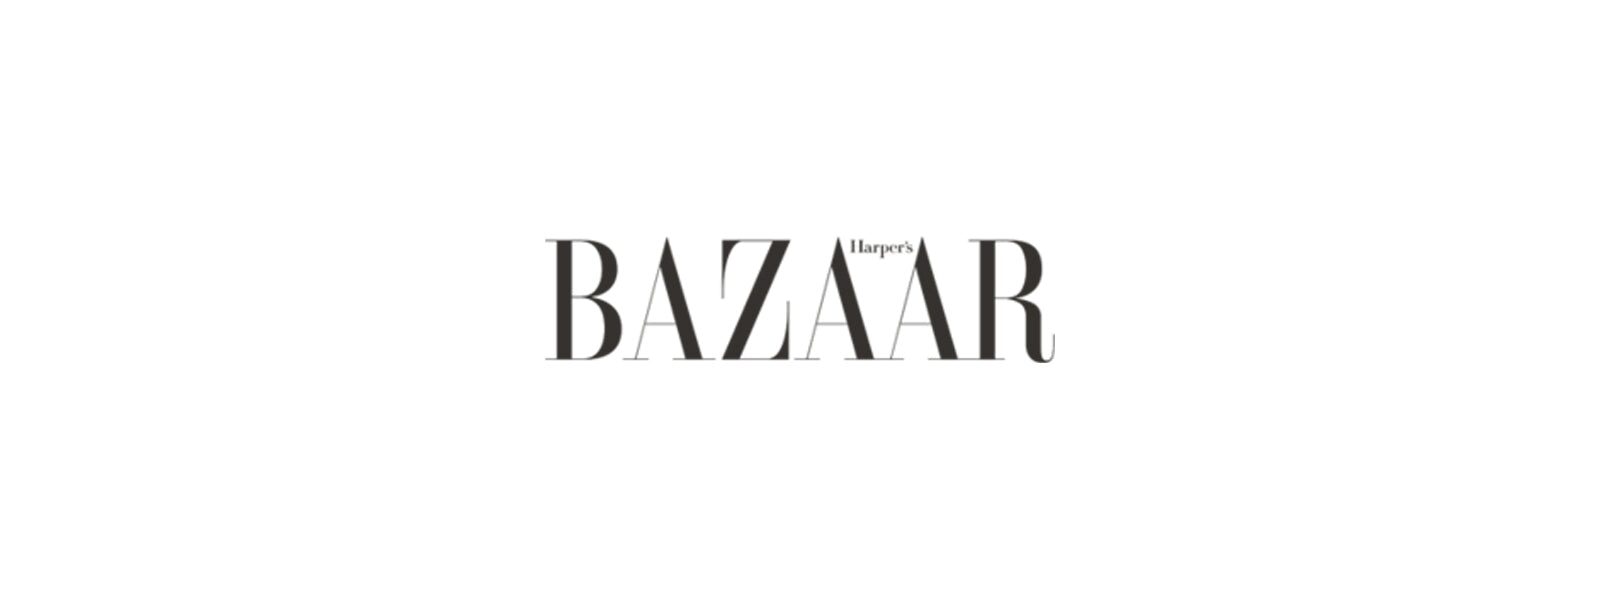 Harpers Bazaar – Sharon Hopley Beauty Favourites